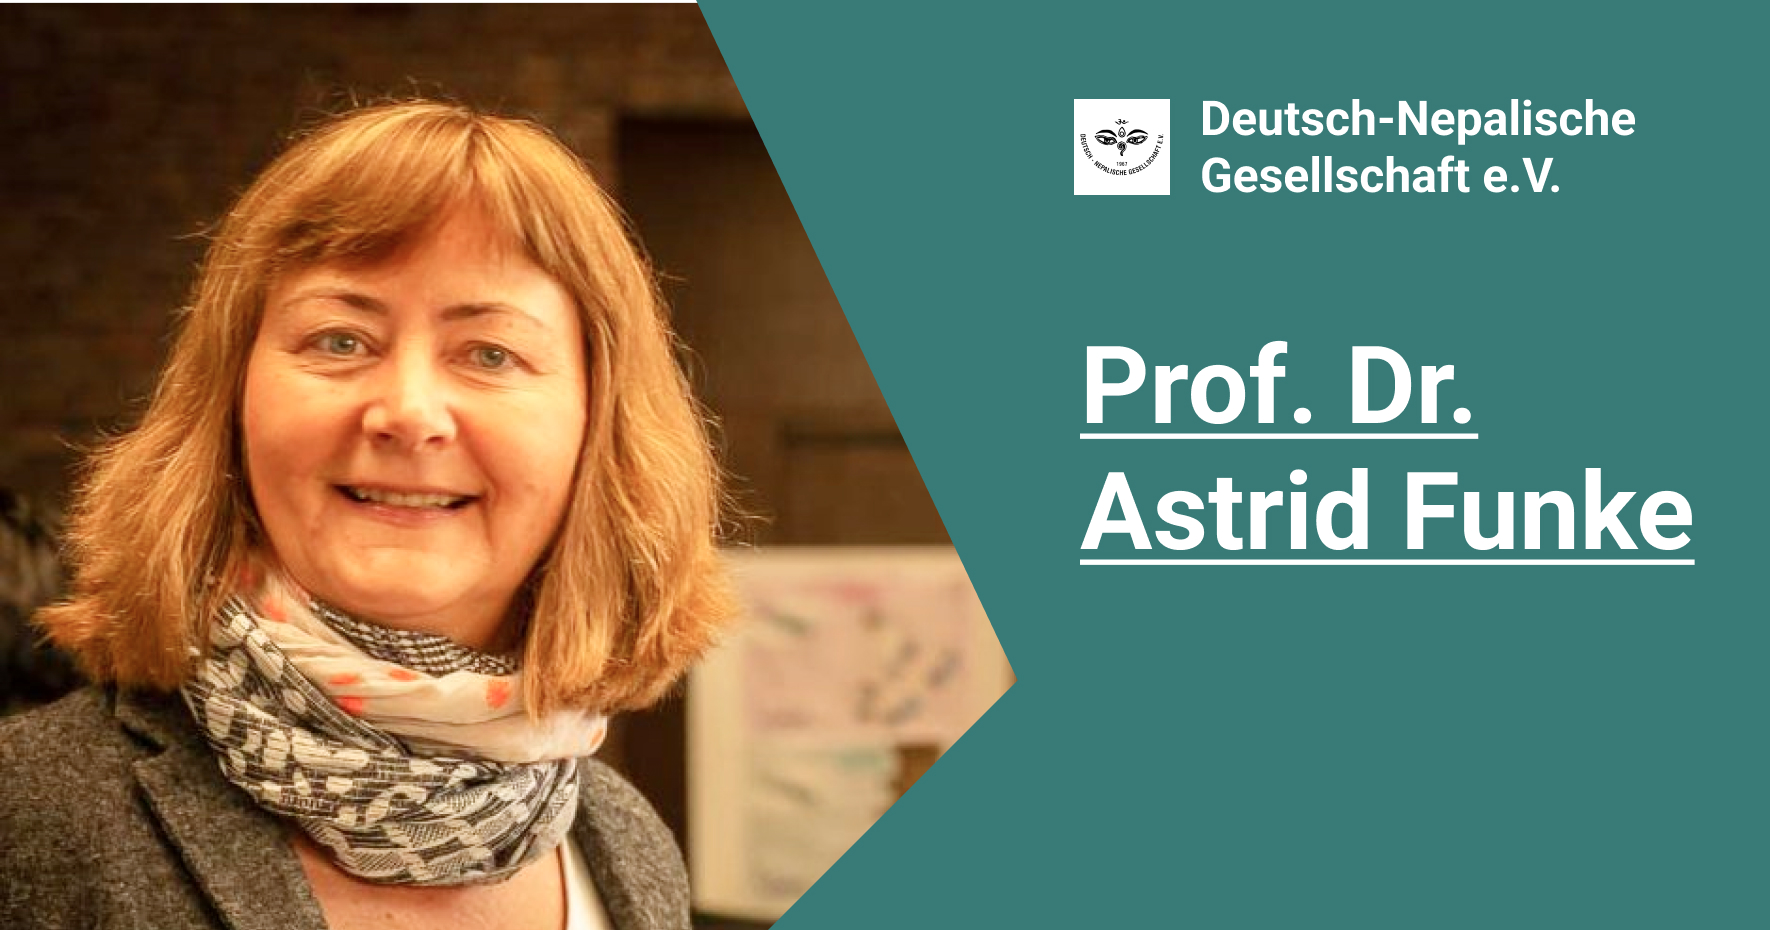 Prof. Dr. Astrid Funke